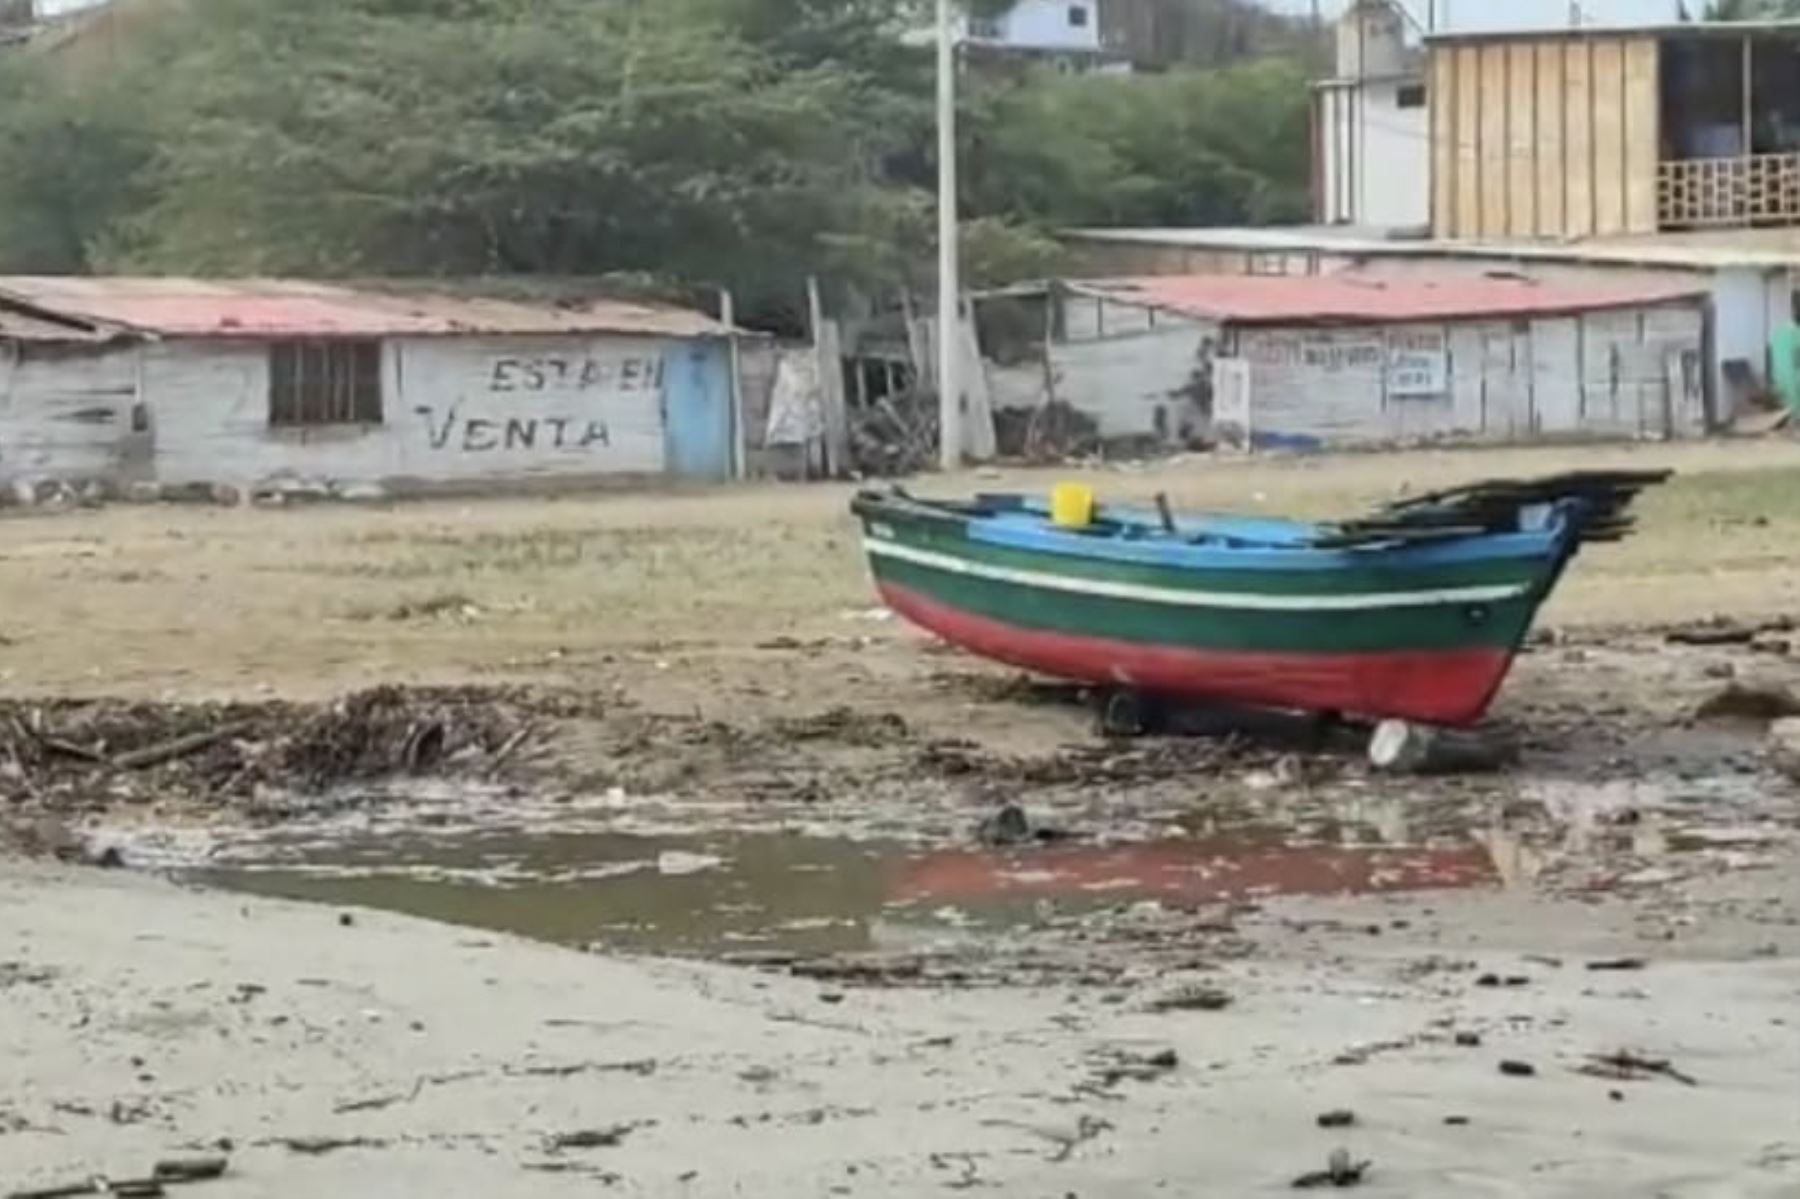 Oleajes ligeros a moderados obligan a cerrar 26 puertos del litoral centro y sur